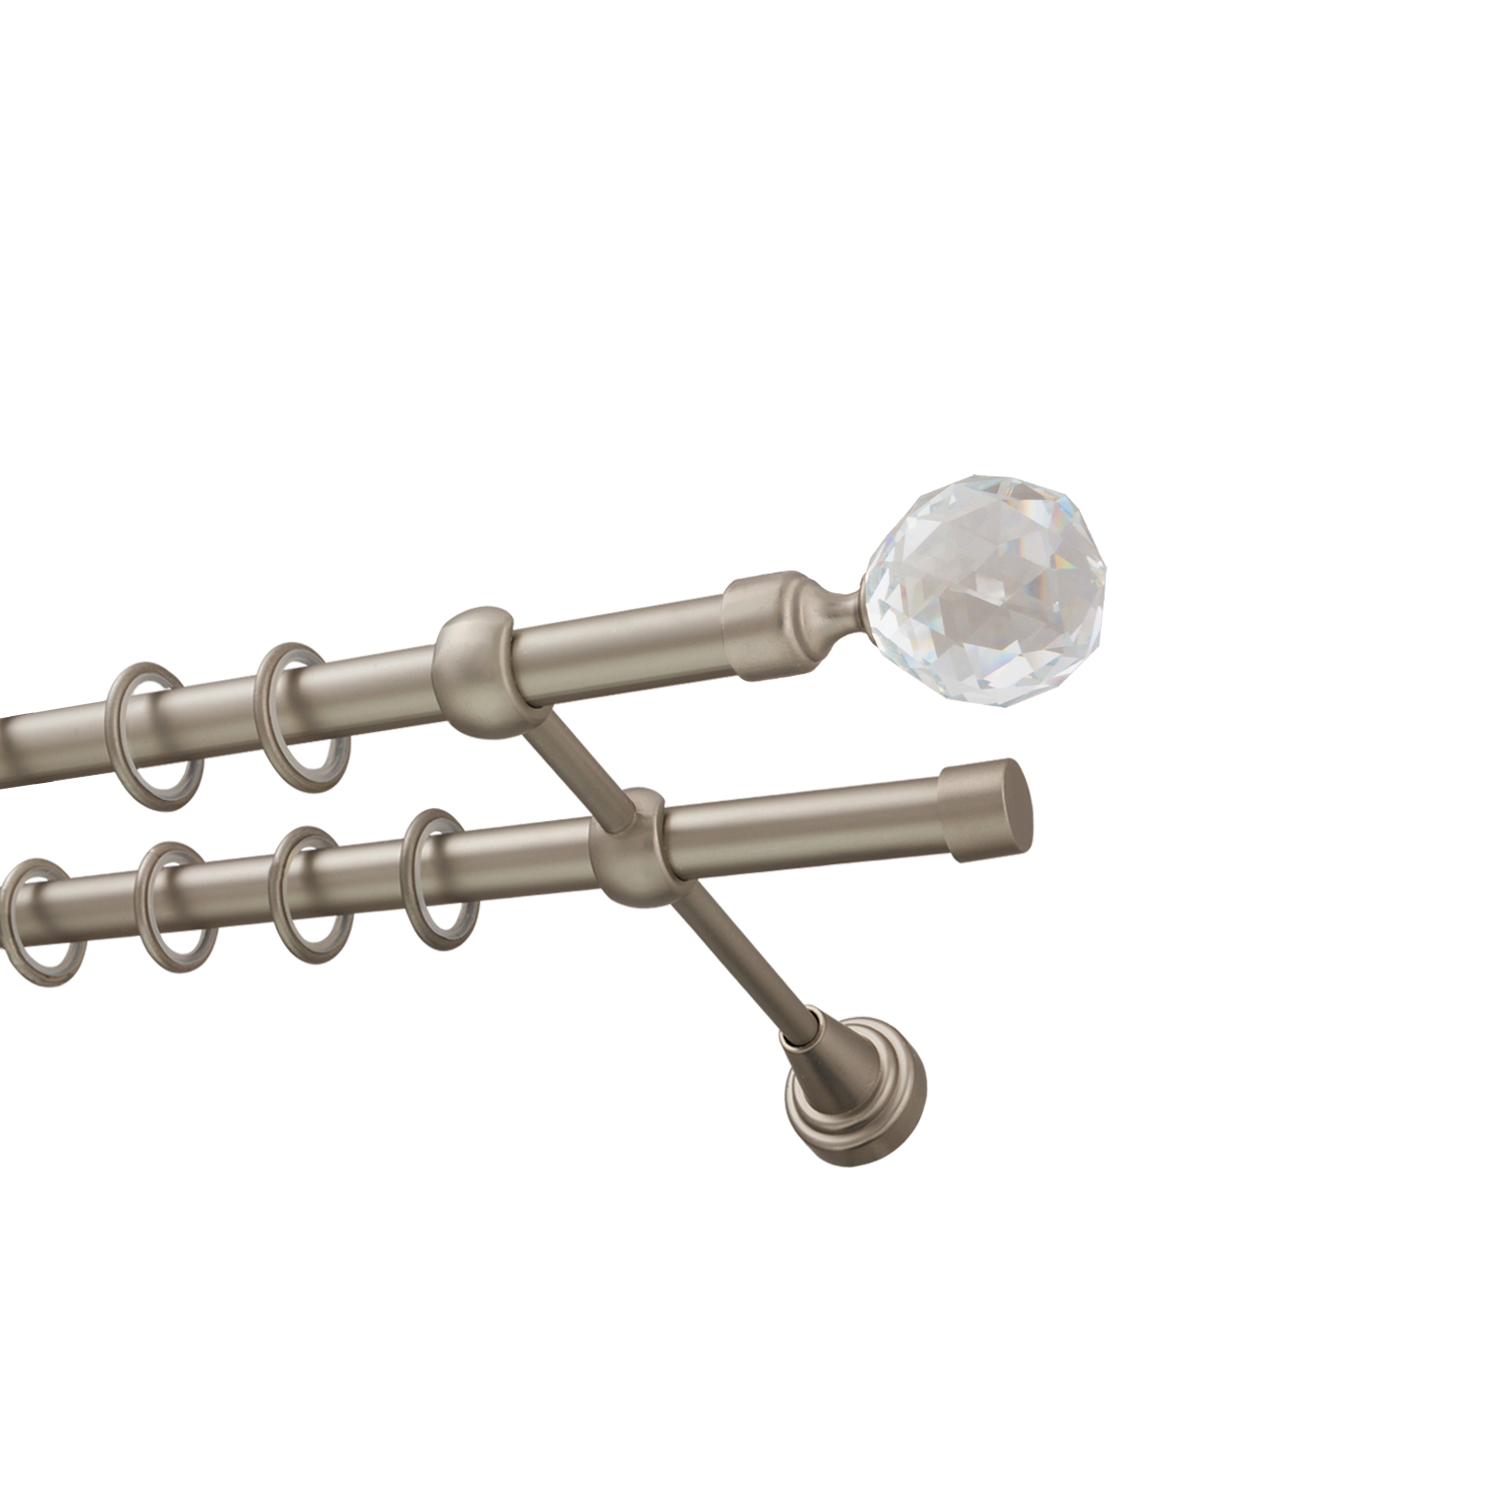 Металлический карниз для штор Карат, двухрядный 16/16 мм, сталь, гладкая штанга, длина 240 см - фото Wikidecor.ru